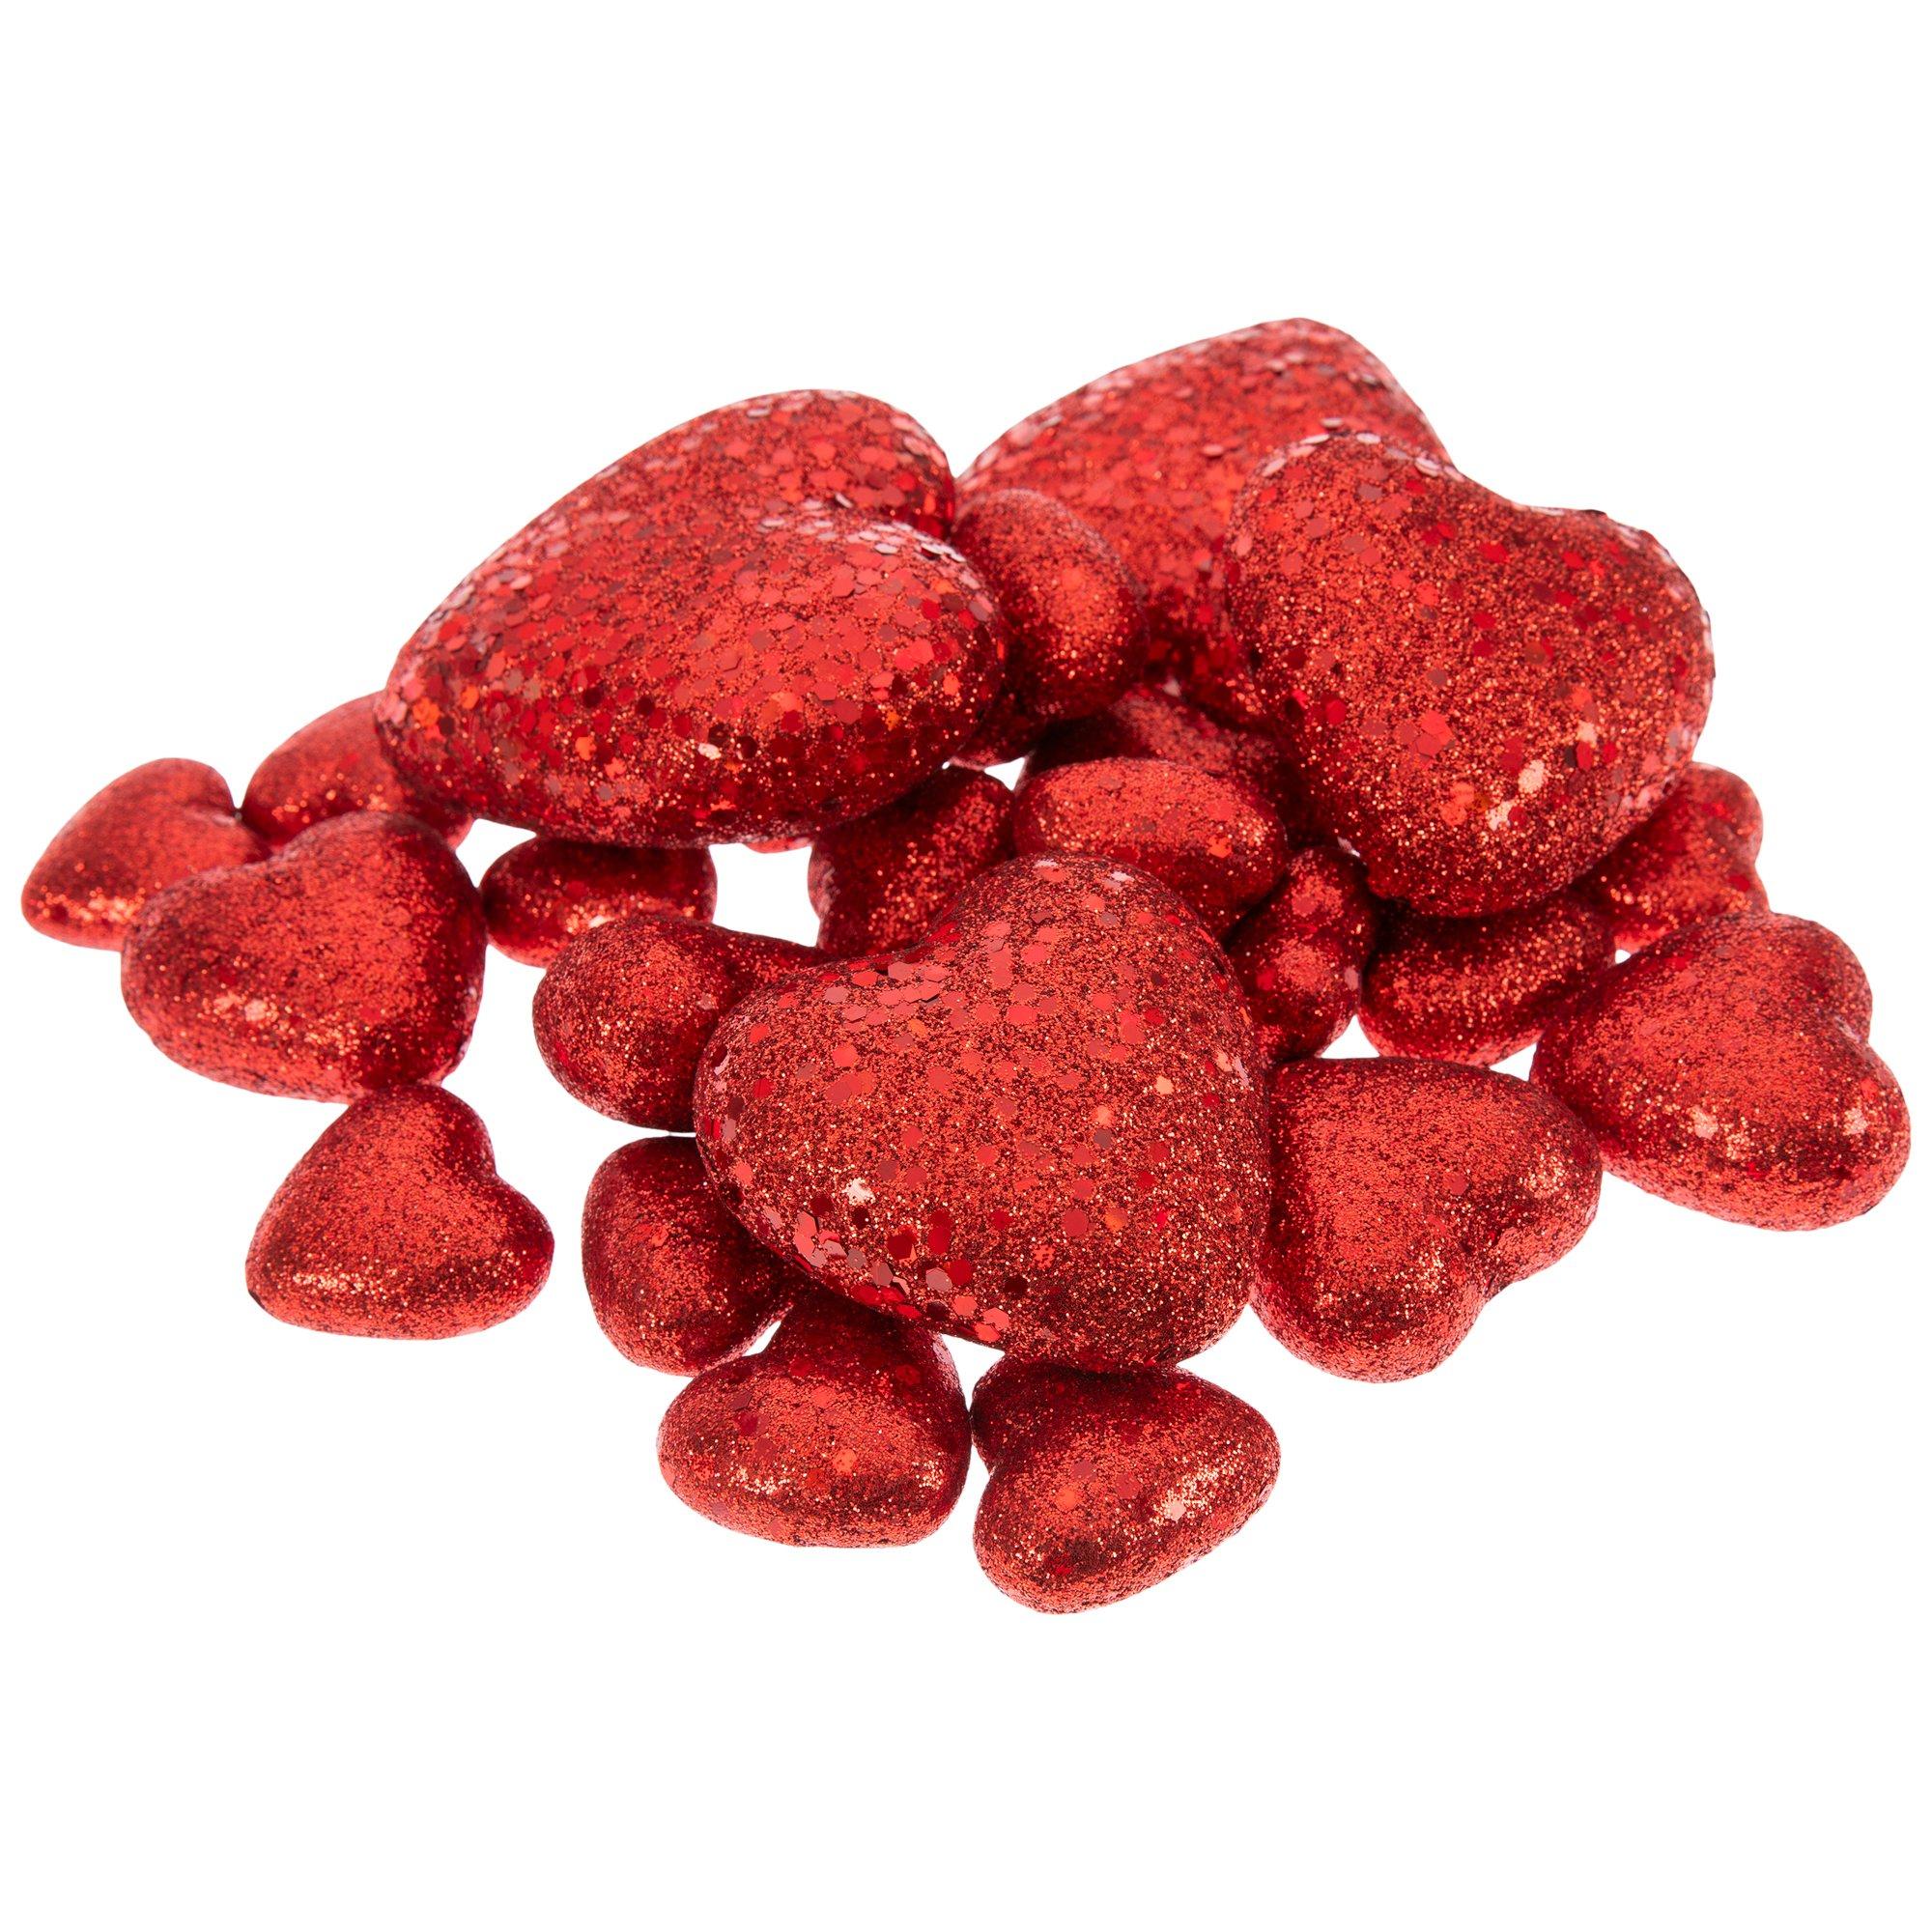 Red Glitter Heart Buttons 